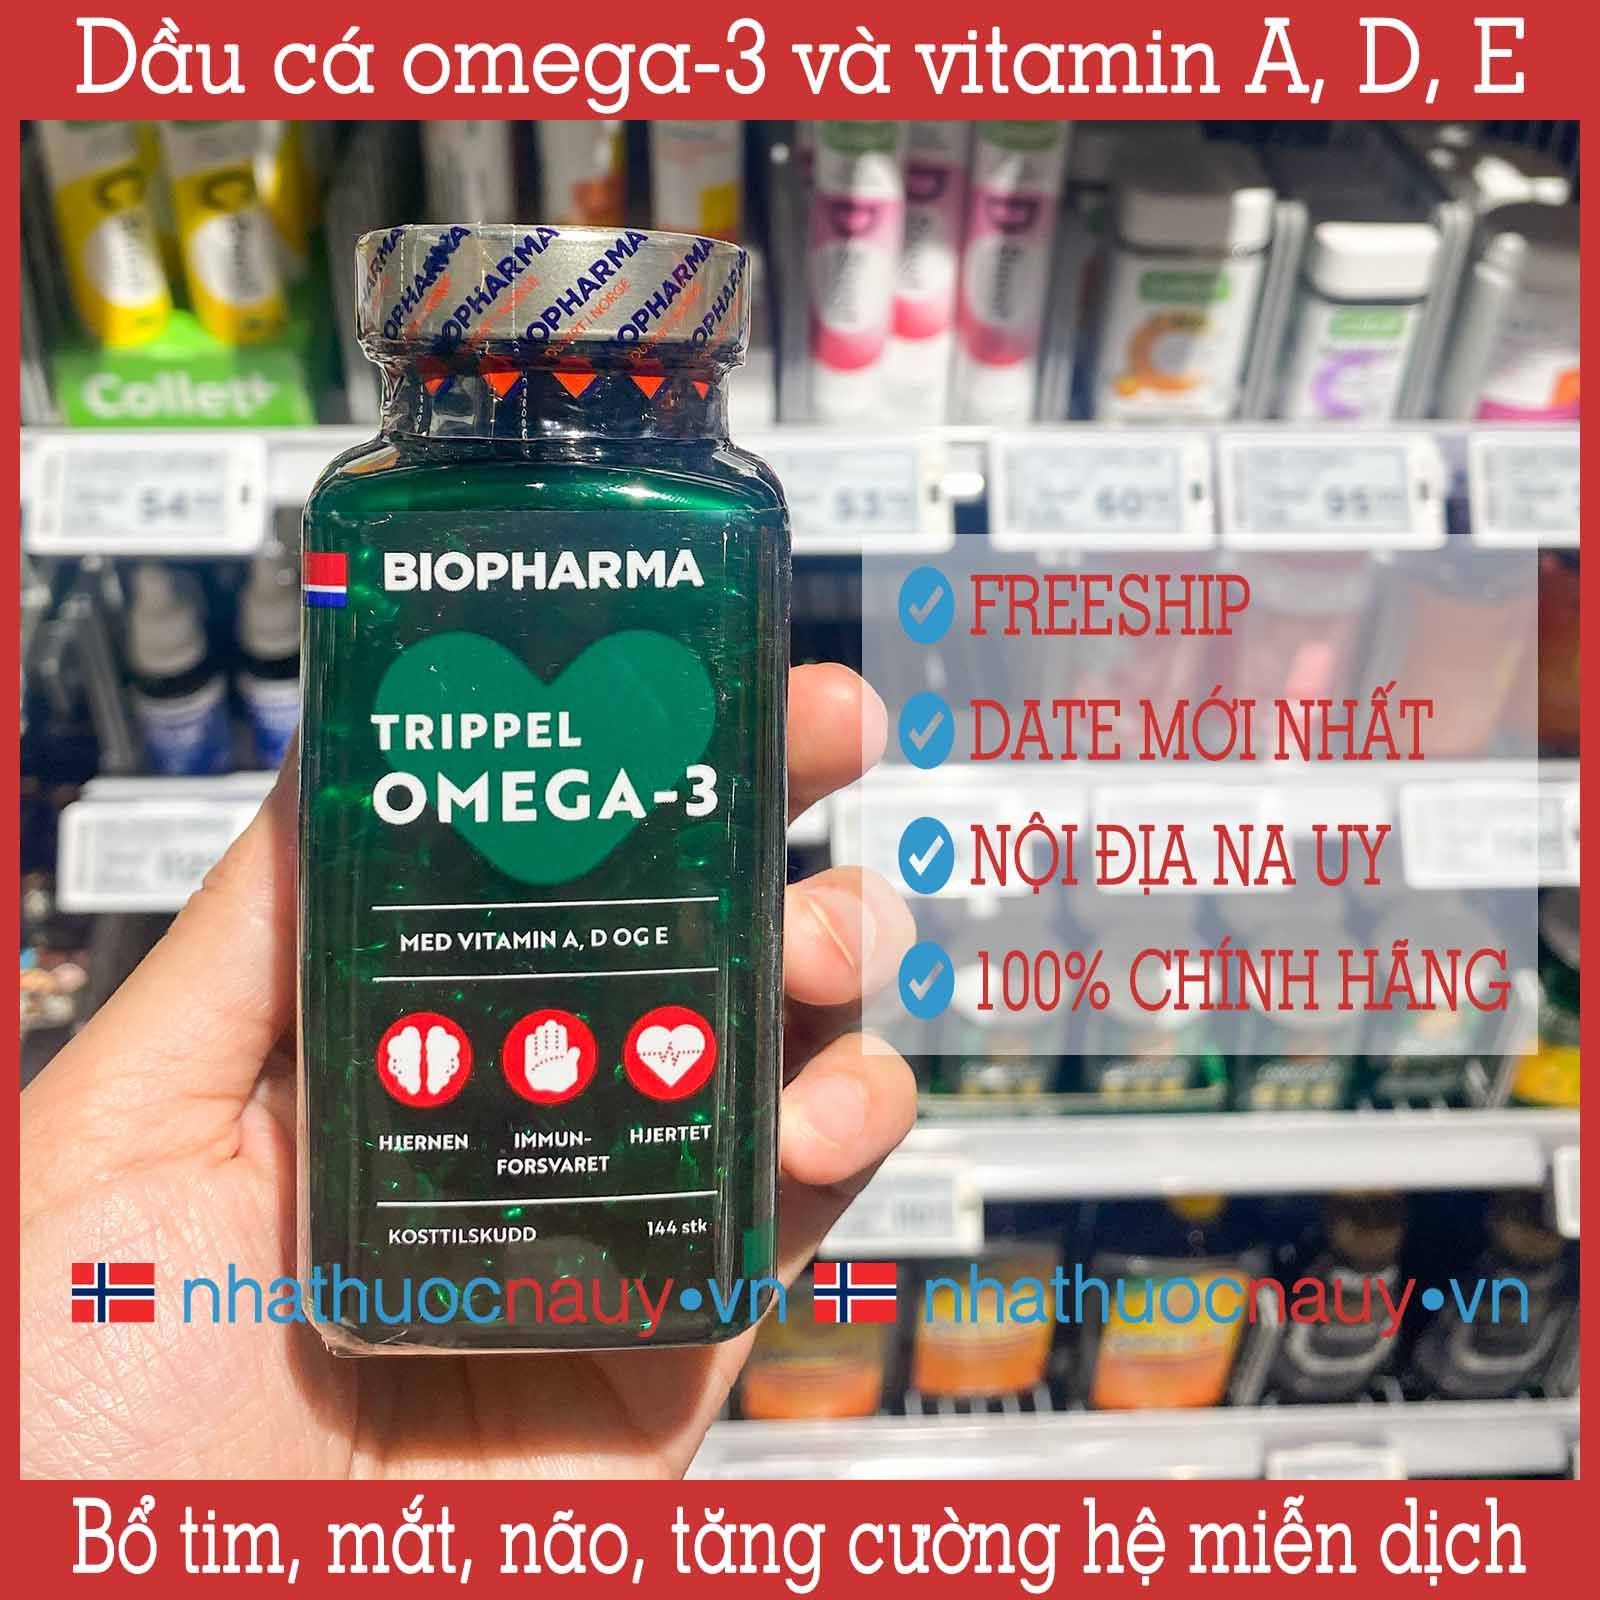 Chính hãng | Date 2025] Biopharma Trippel | Dầu cá omega-3 Na Uy –  nhathuocnauy.vn